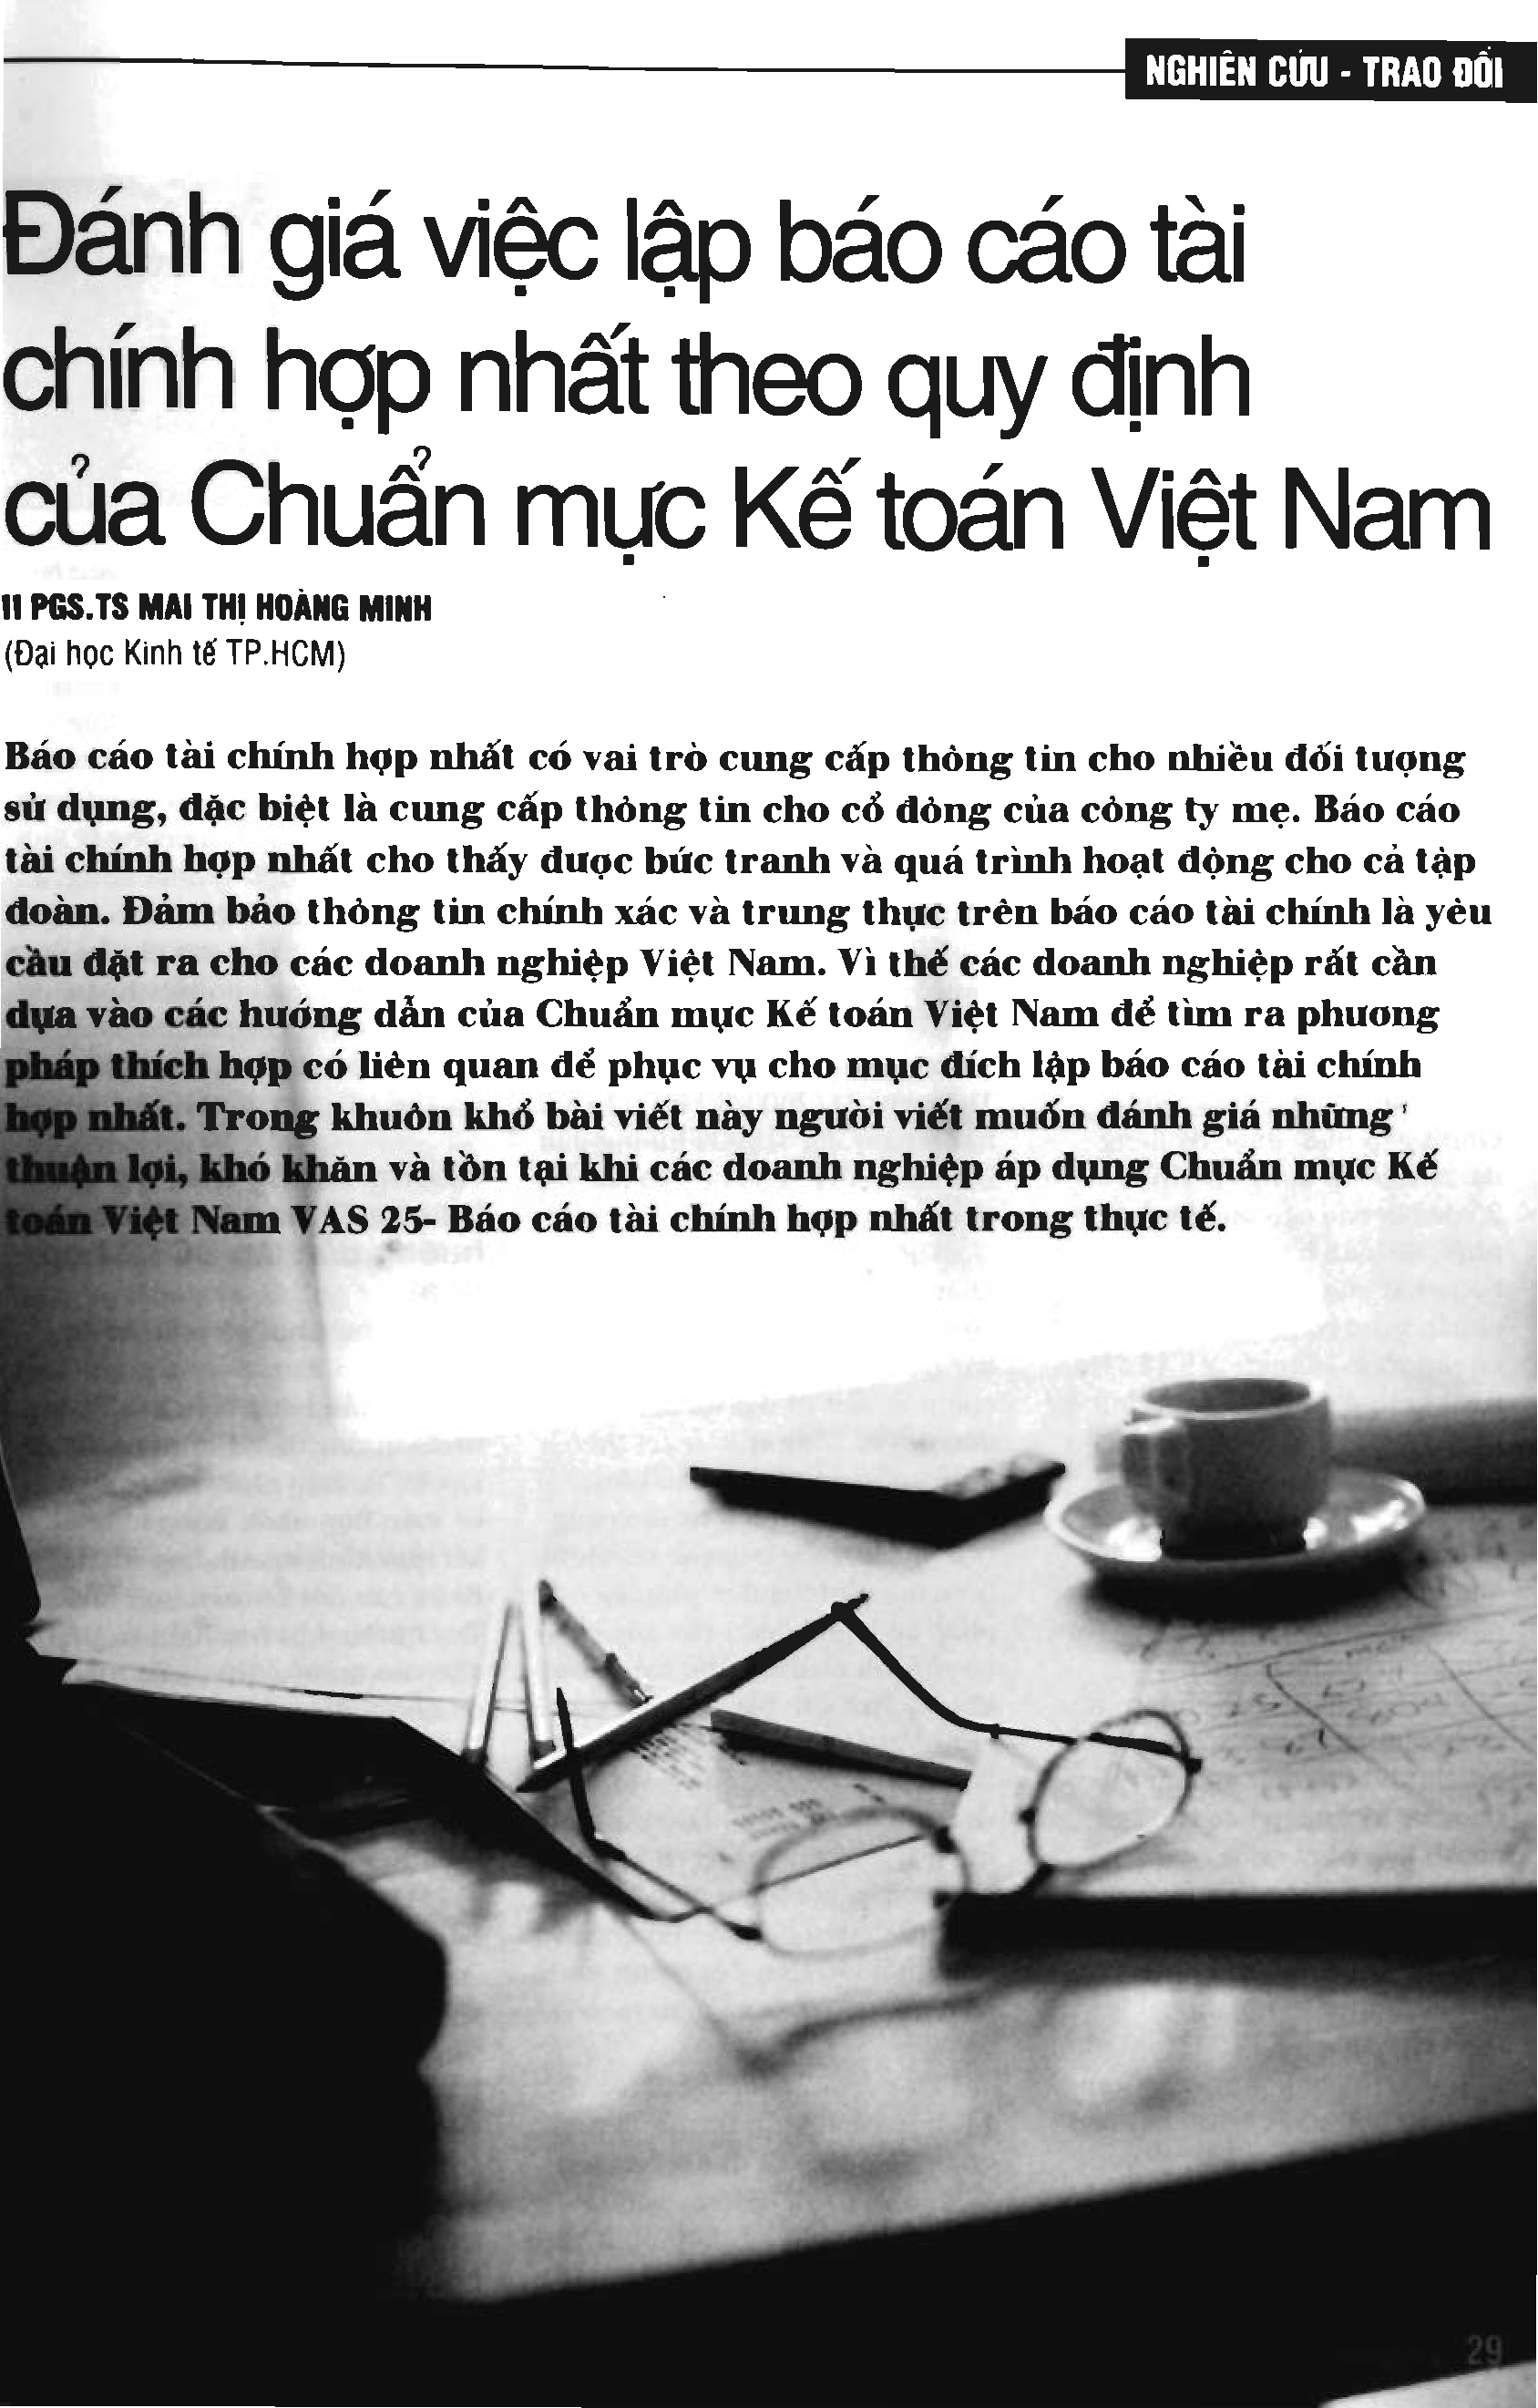 Đánh giá việc lập báo cáo tài chính hợp nhất theo quy định của Chuẩn mực Kế toán Việt Nam